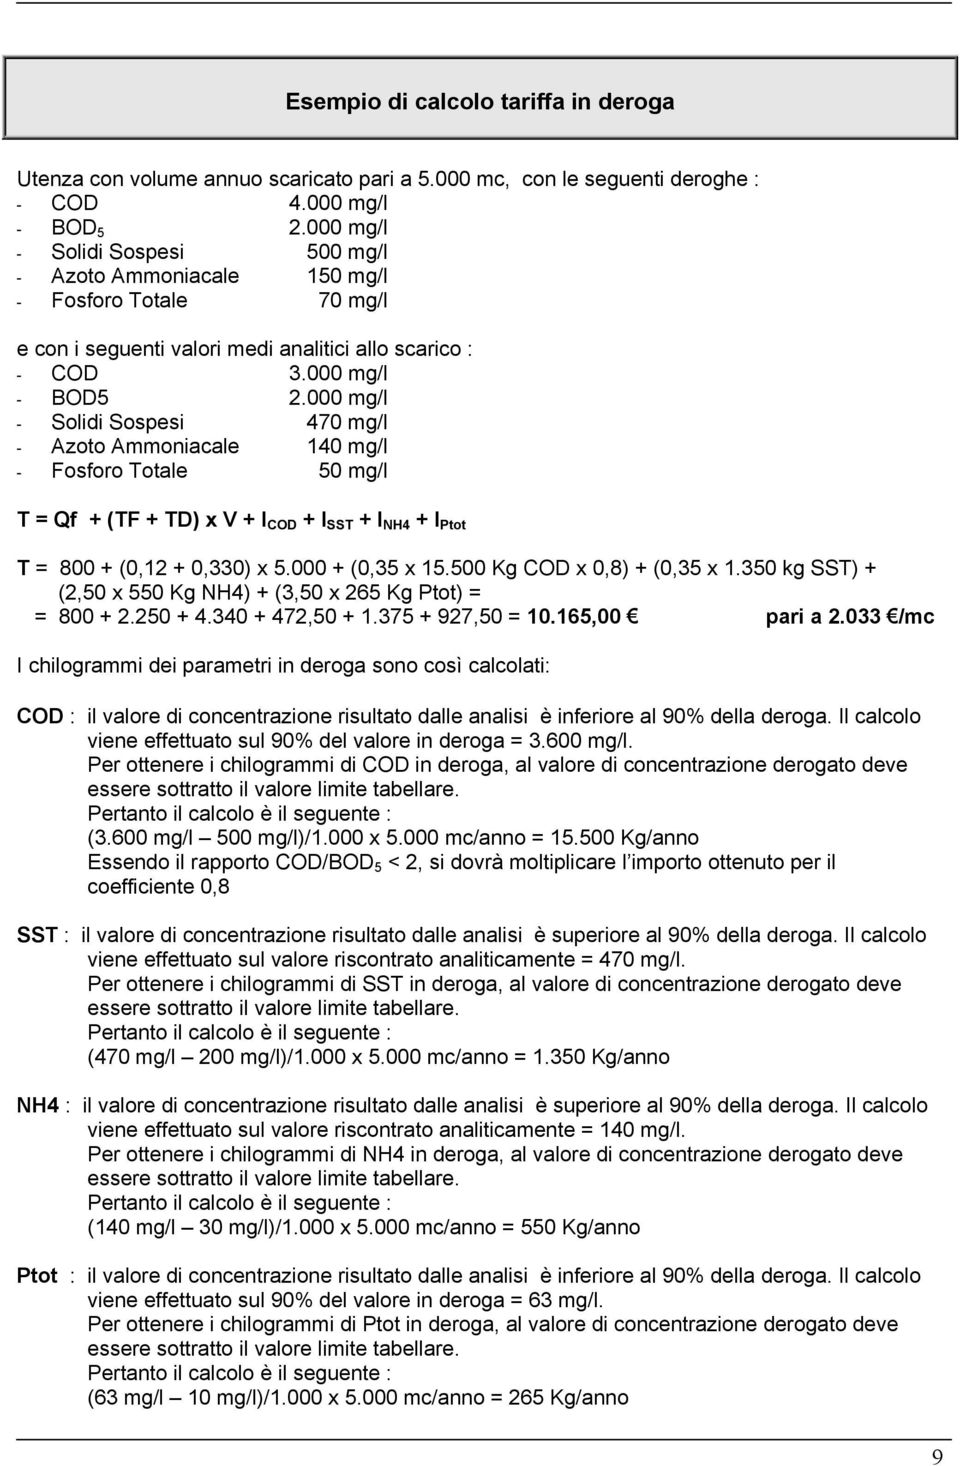 000 mg/l - Solidi Sospesi 470 mg/l - Azoto Ammoniacale 140 mg/l - Fosforo Totale 50 mg/l T = Qf + (TF + TD) x V + I COD + I SST + I NH4 + I Ptot T = 800 + (0,12 + 0,330) x 5.000 + (0,35 x 15.